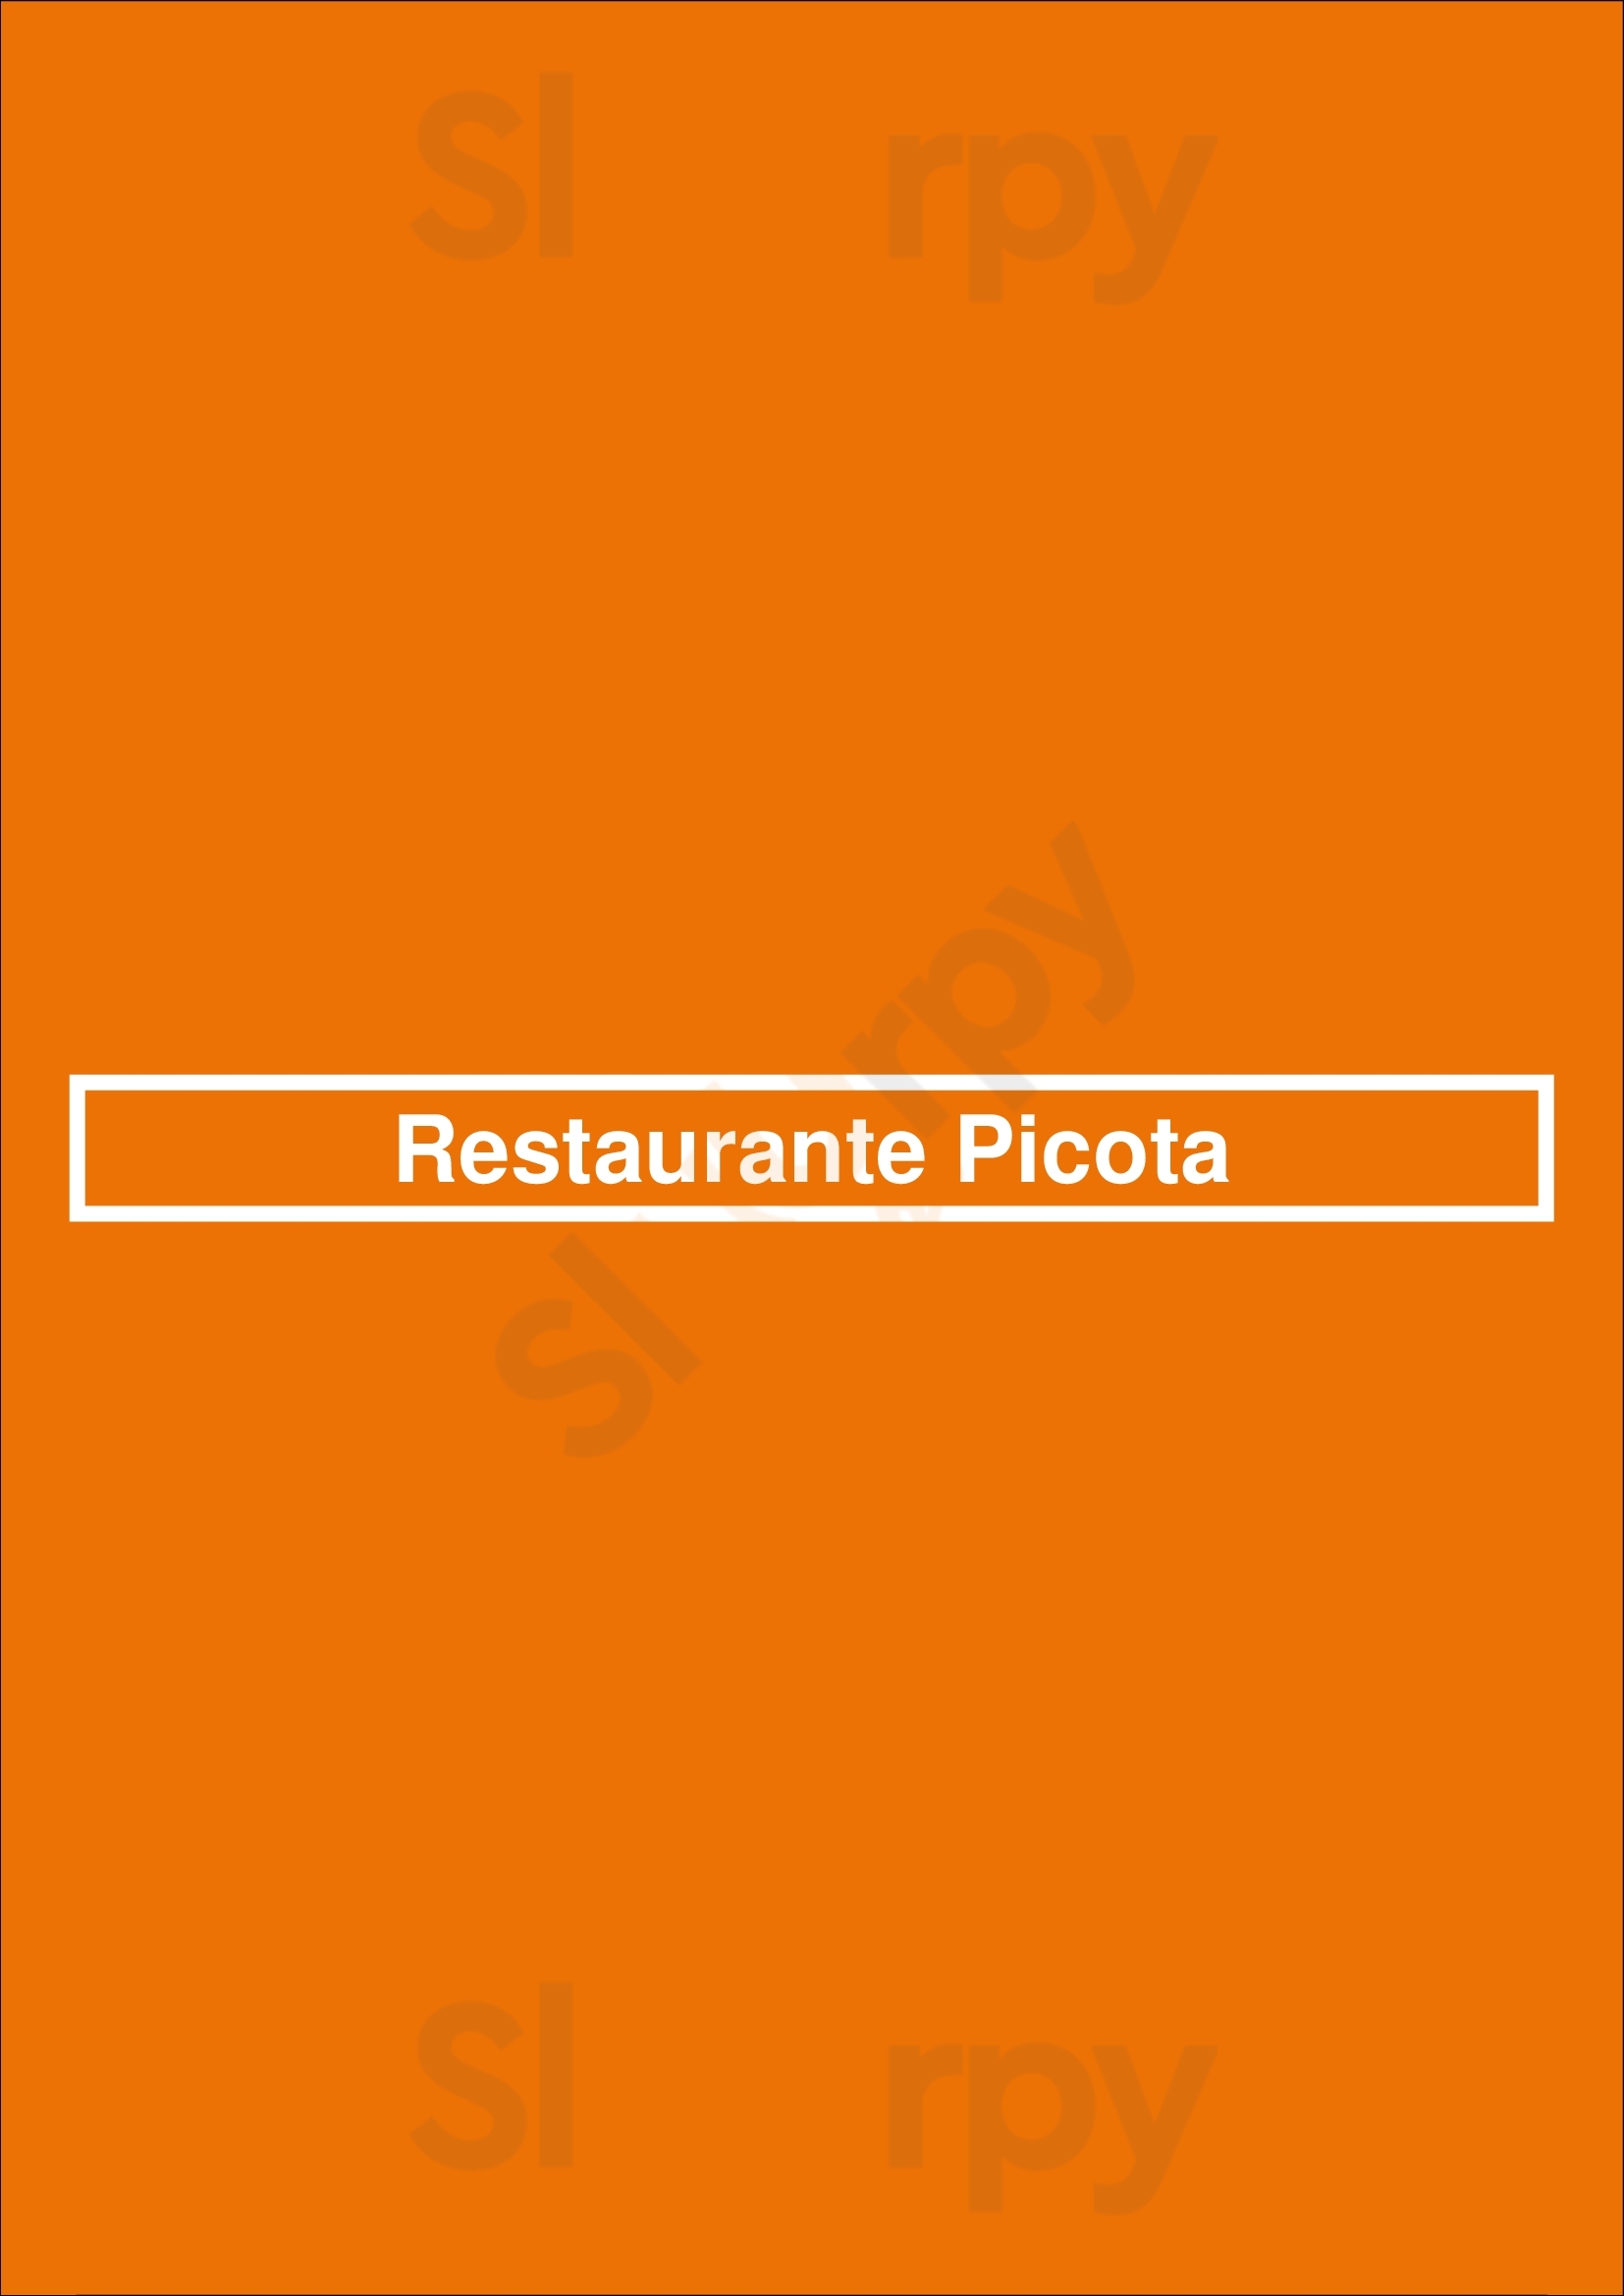 Restaurante Picota Porto Menu - 1